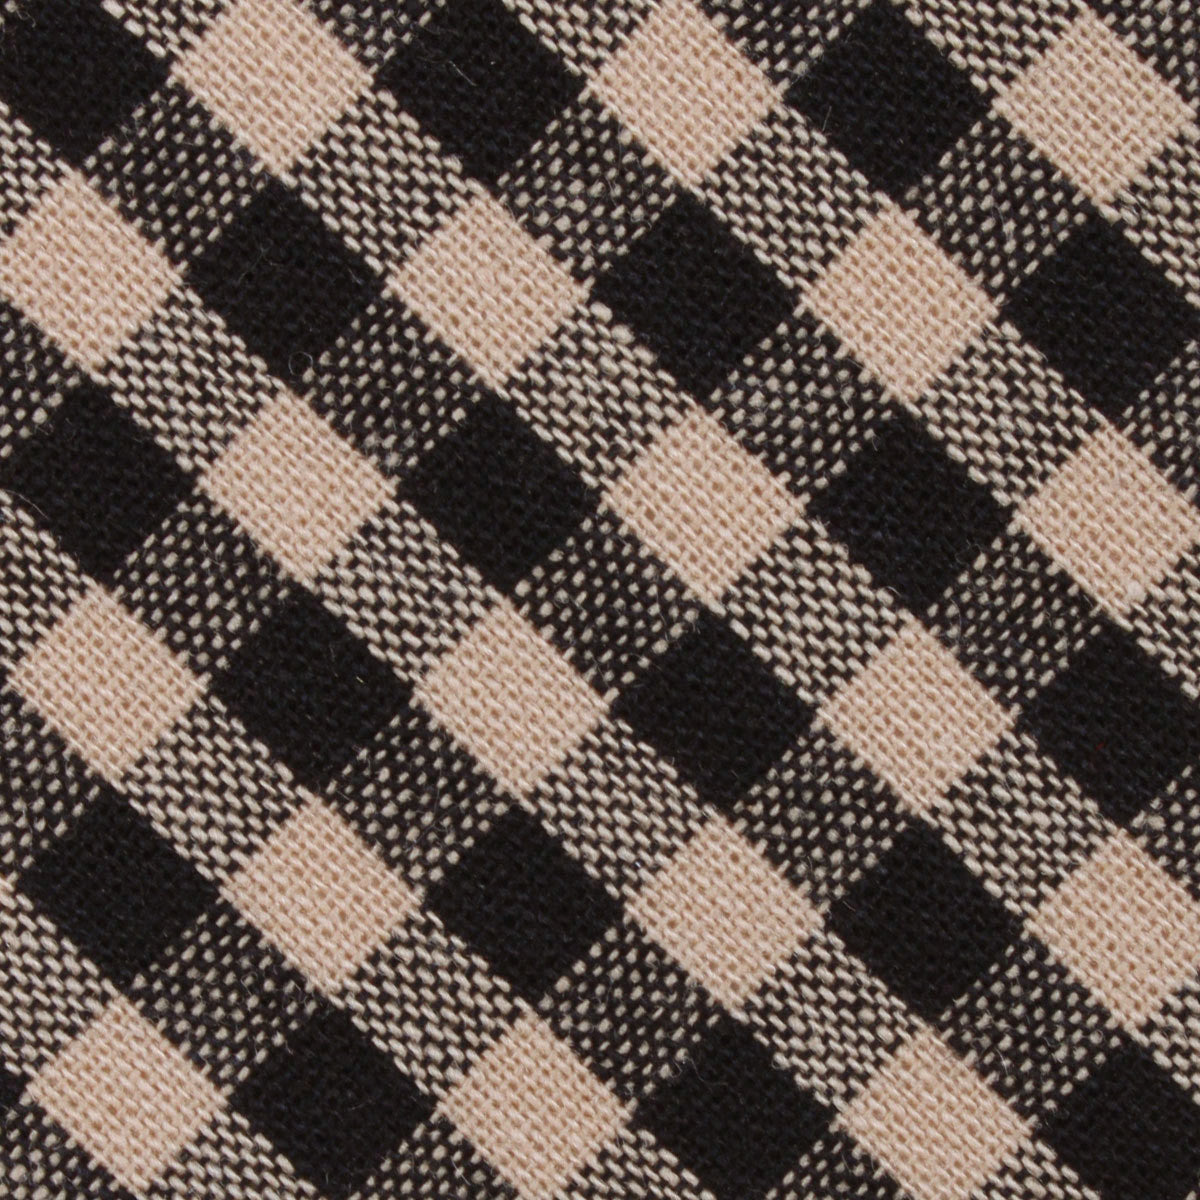 Khaki Black Gingham Blend Fabric Pocket Square